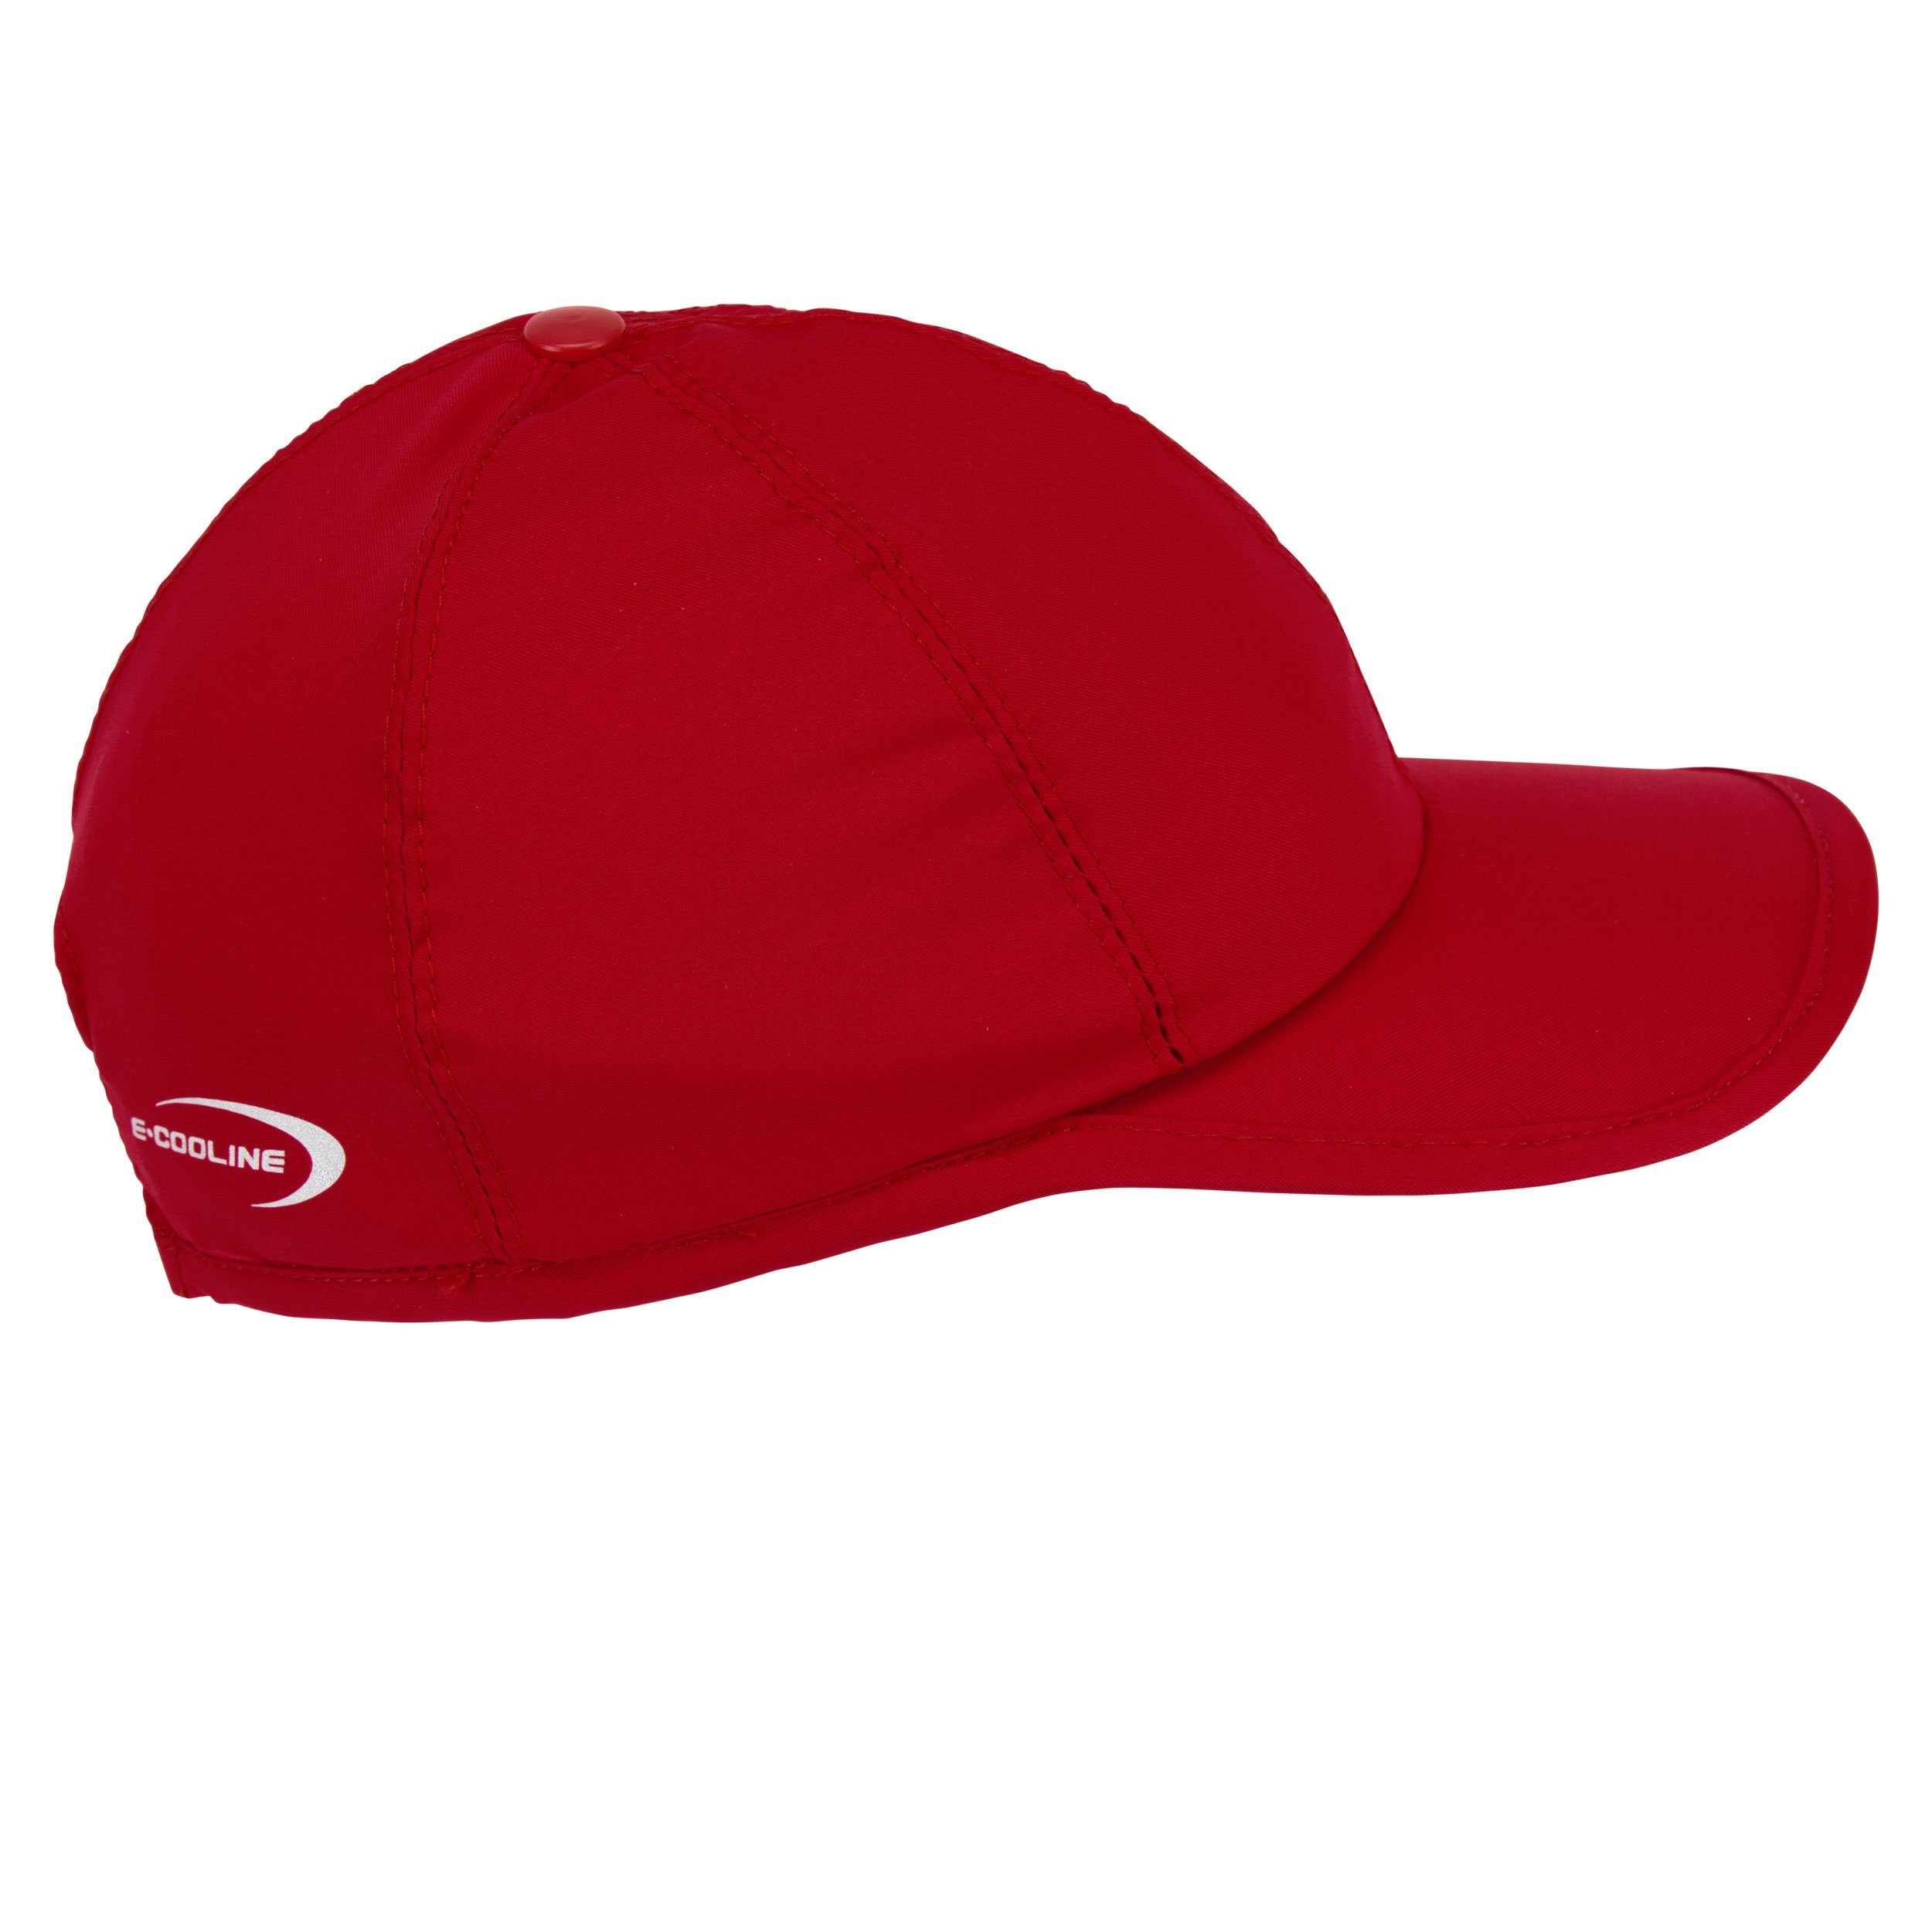 mit durch E.COOLINE - Wasser Baseball Kühlung Anziehen aktiv kühlende Aktivierung Cap Mütze - Rot Klimaanlage zum